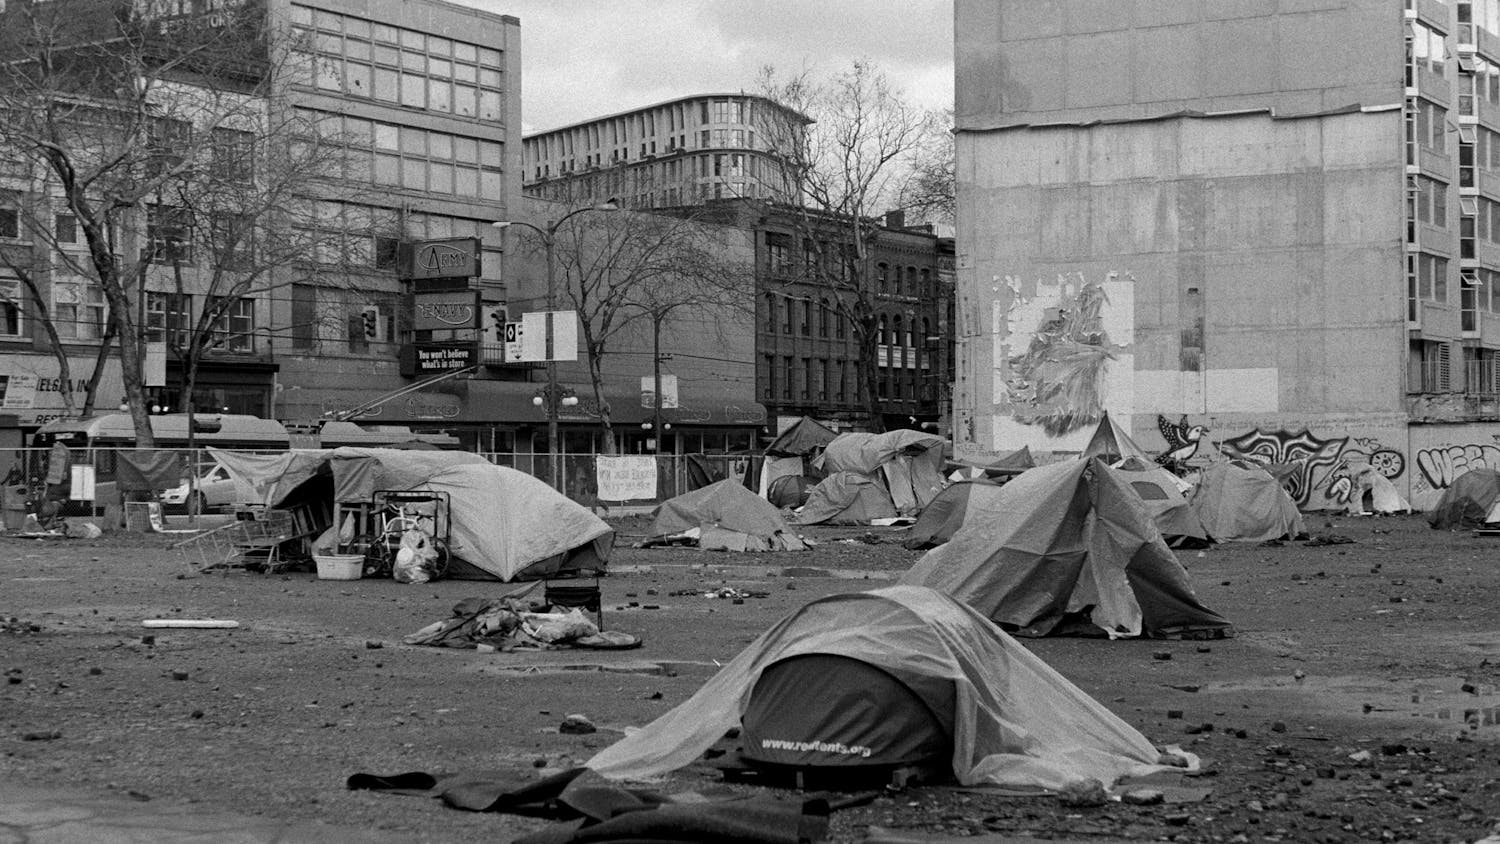 Homeless Encampment Unsplash.jpg